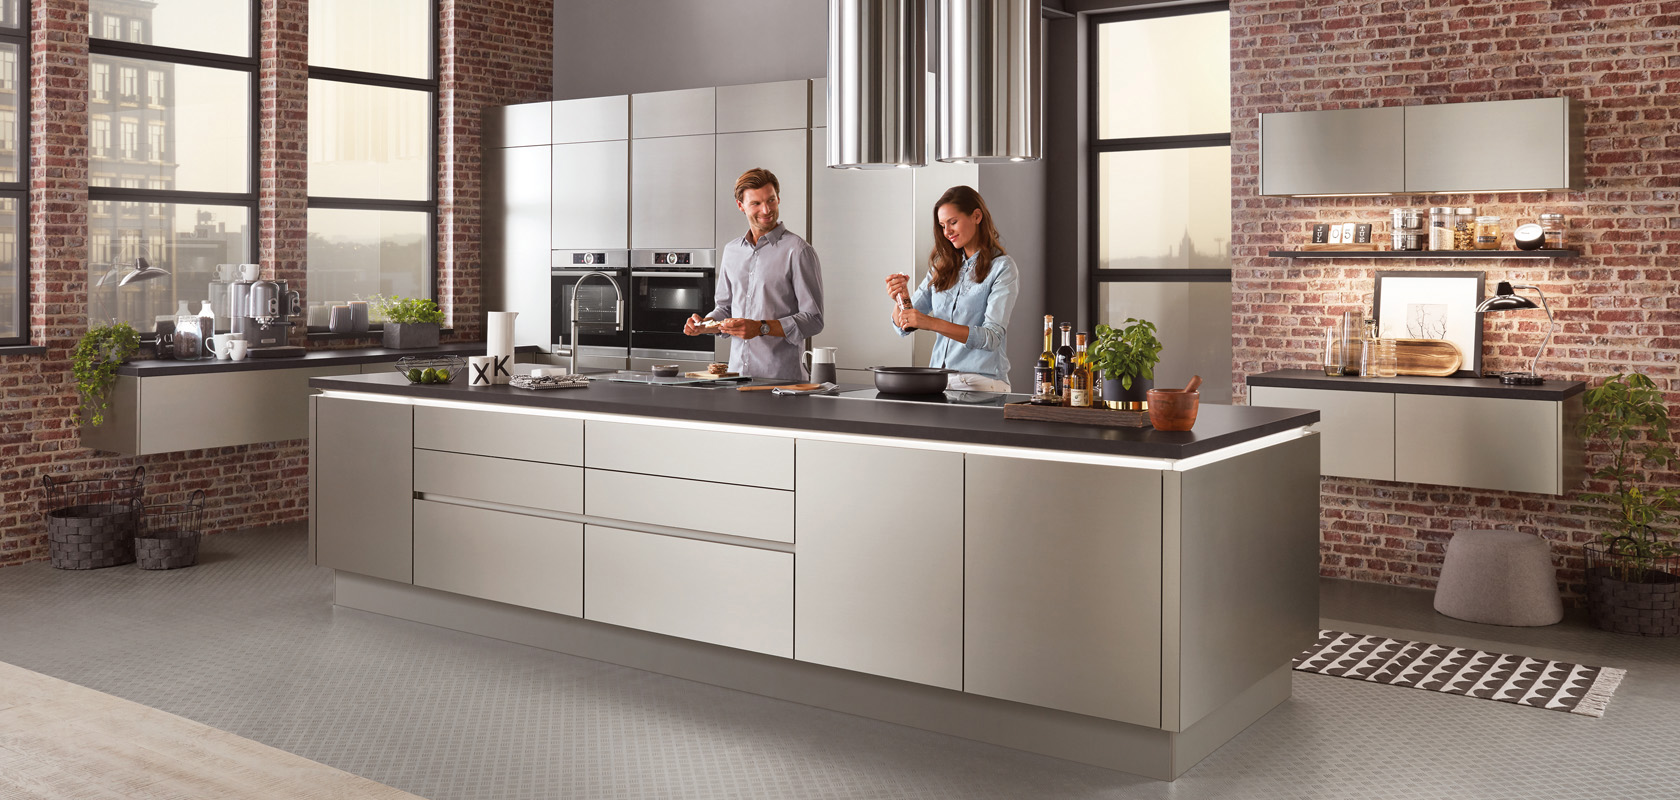 Moderní kuchyňské prostředí s párem vařícím společně, s nerezovými spotřebiči, elegantními skříňkami a průmyslově stylovou cihlovou stěnou v pozadí.